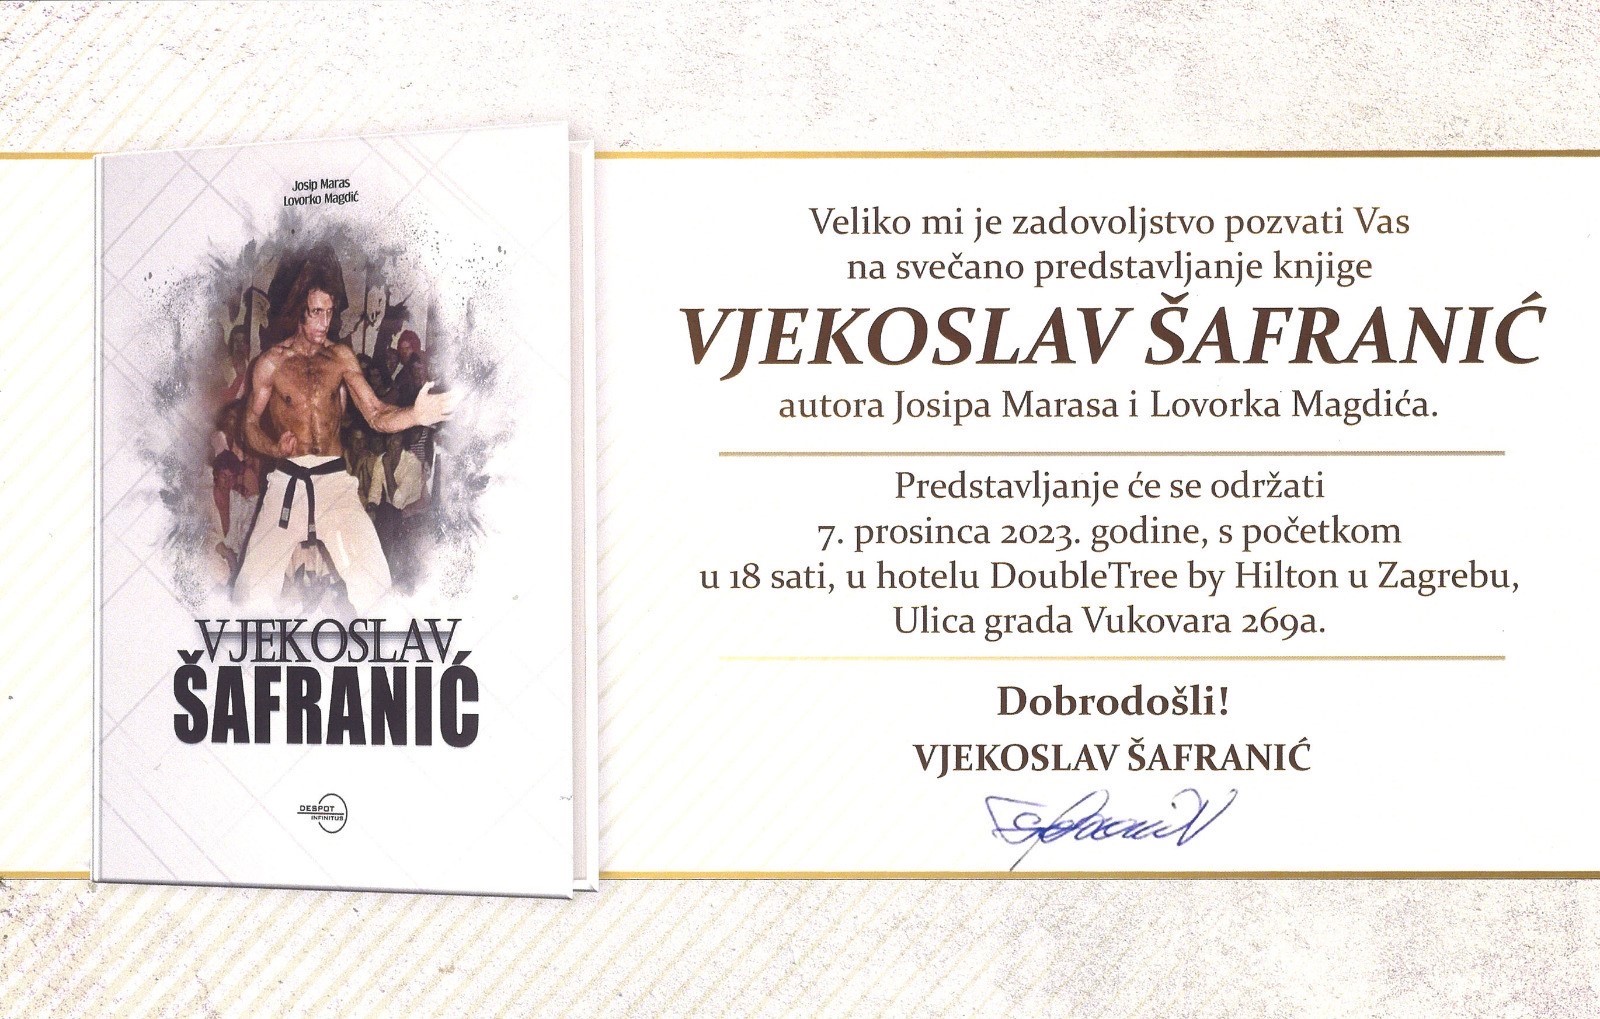 POZIVNICA - Svečano predstavljanje knjige „VJEKOSLAV ŠAFRANIĆ“, autora Josipa Marasa i Lovorka Magdića, 7.12.2023.